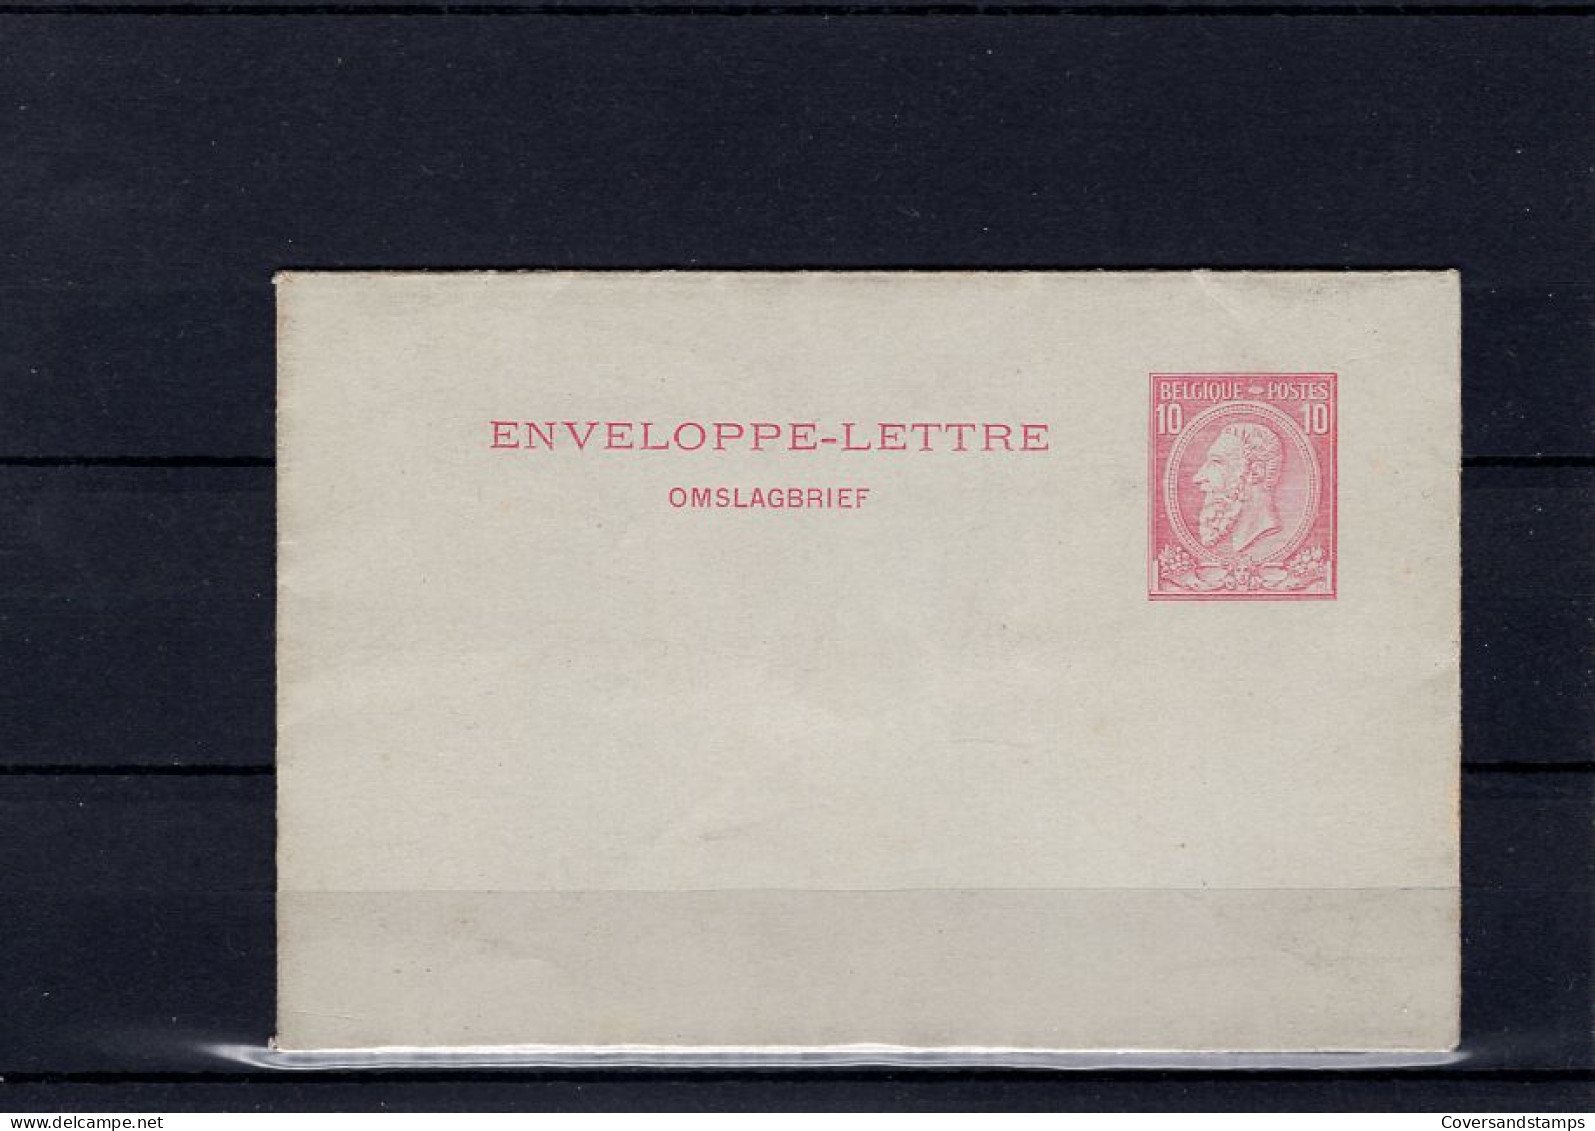  België : Omslagbrief - Buste-lettere